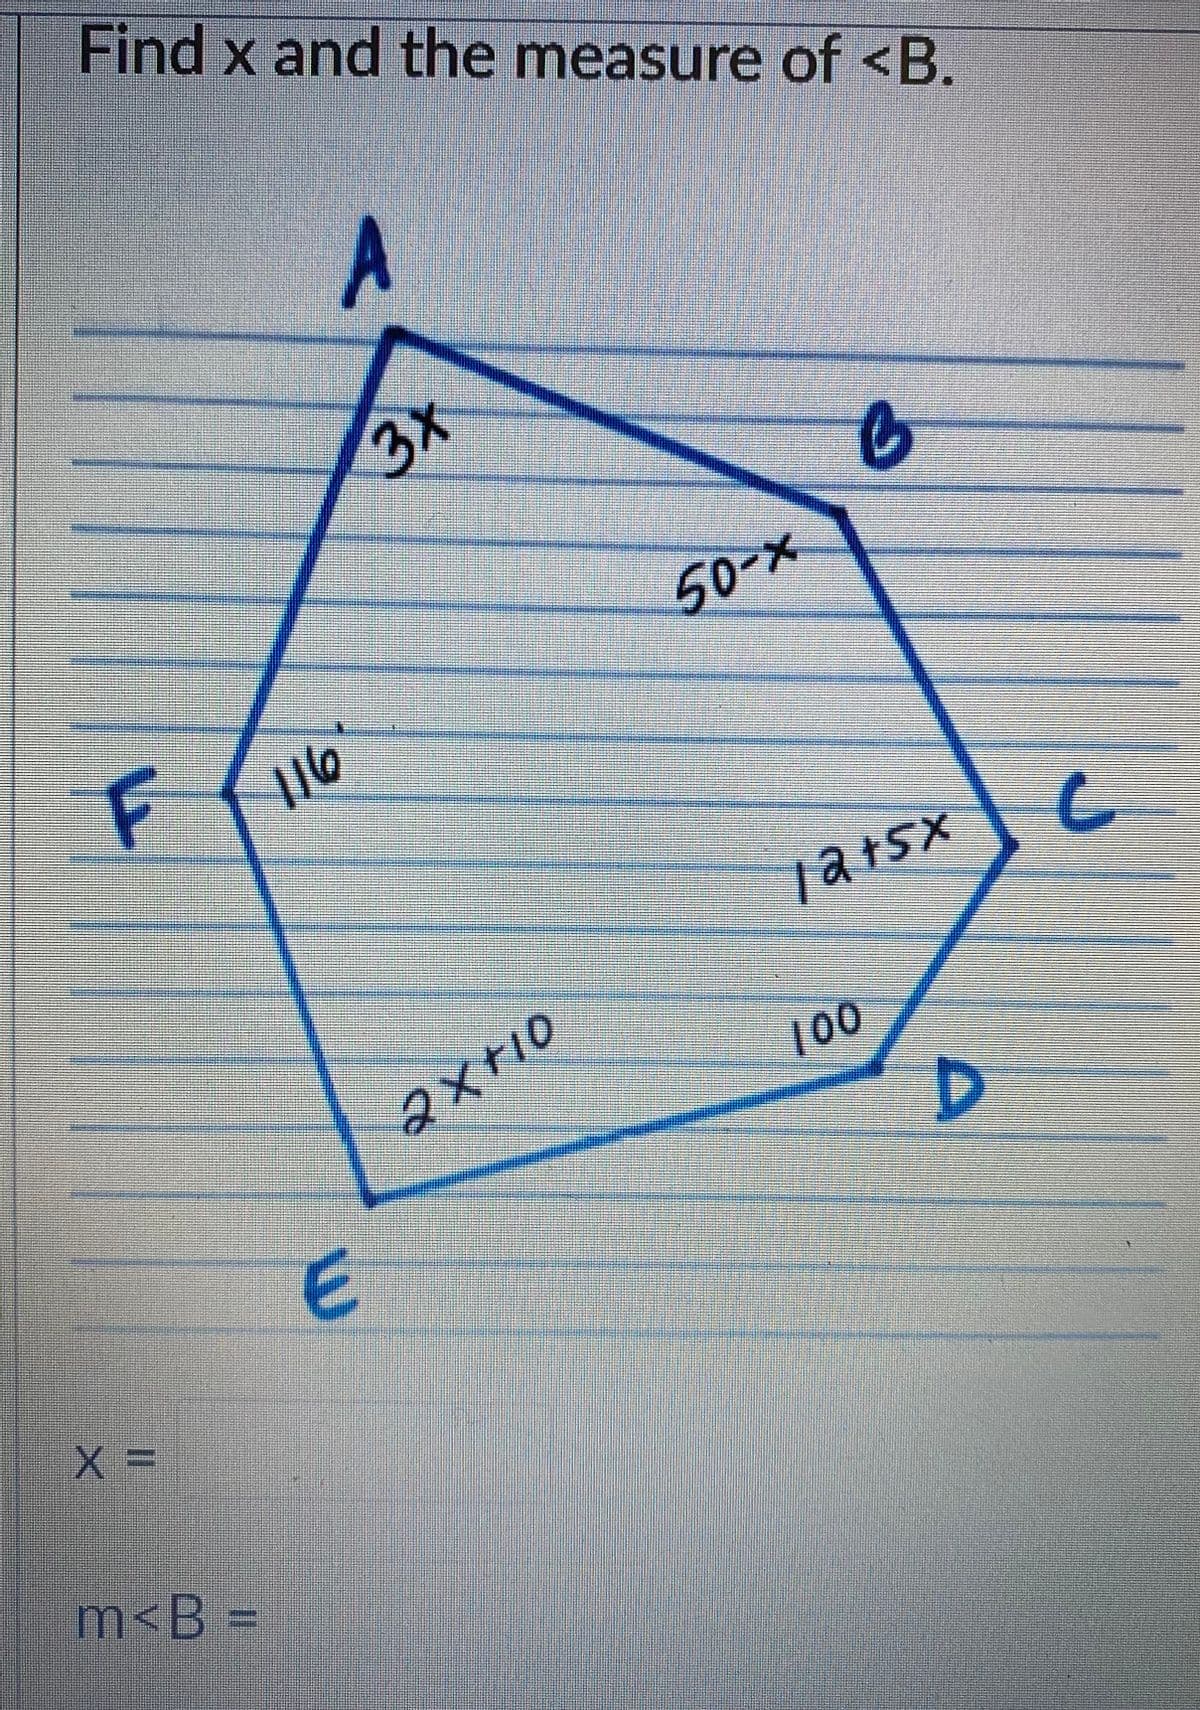 Find x and the measure of <B.
A
3x
50-x
X+10
100
D
m<B% D
